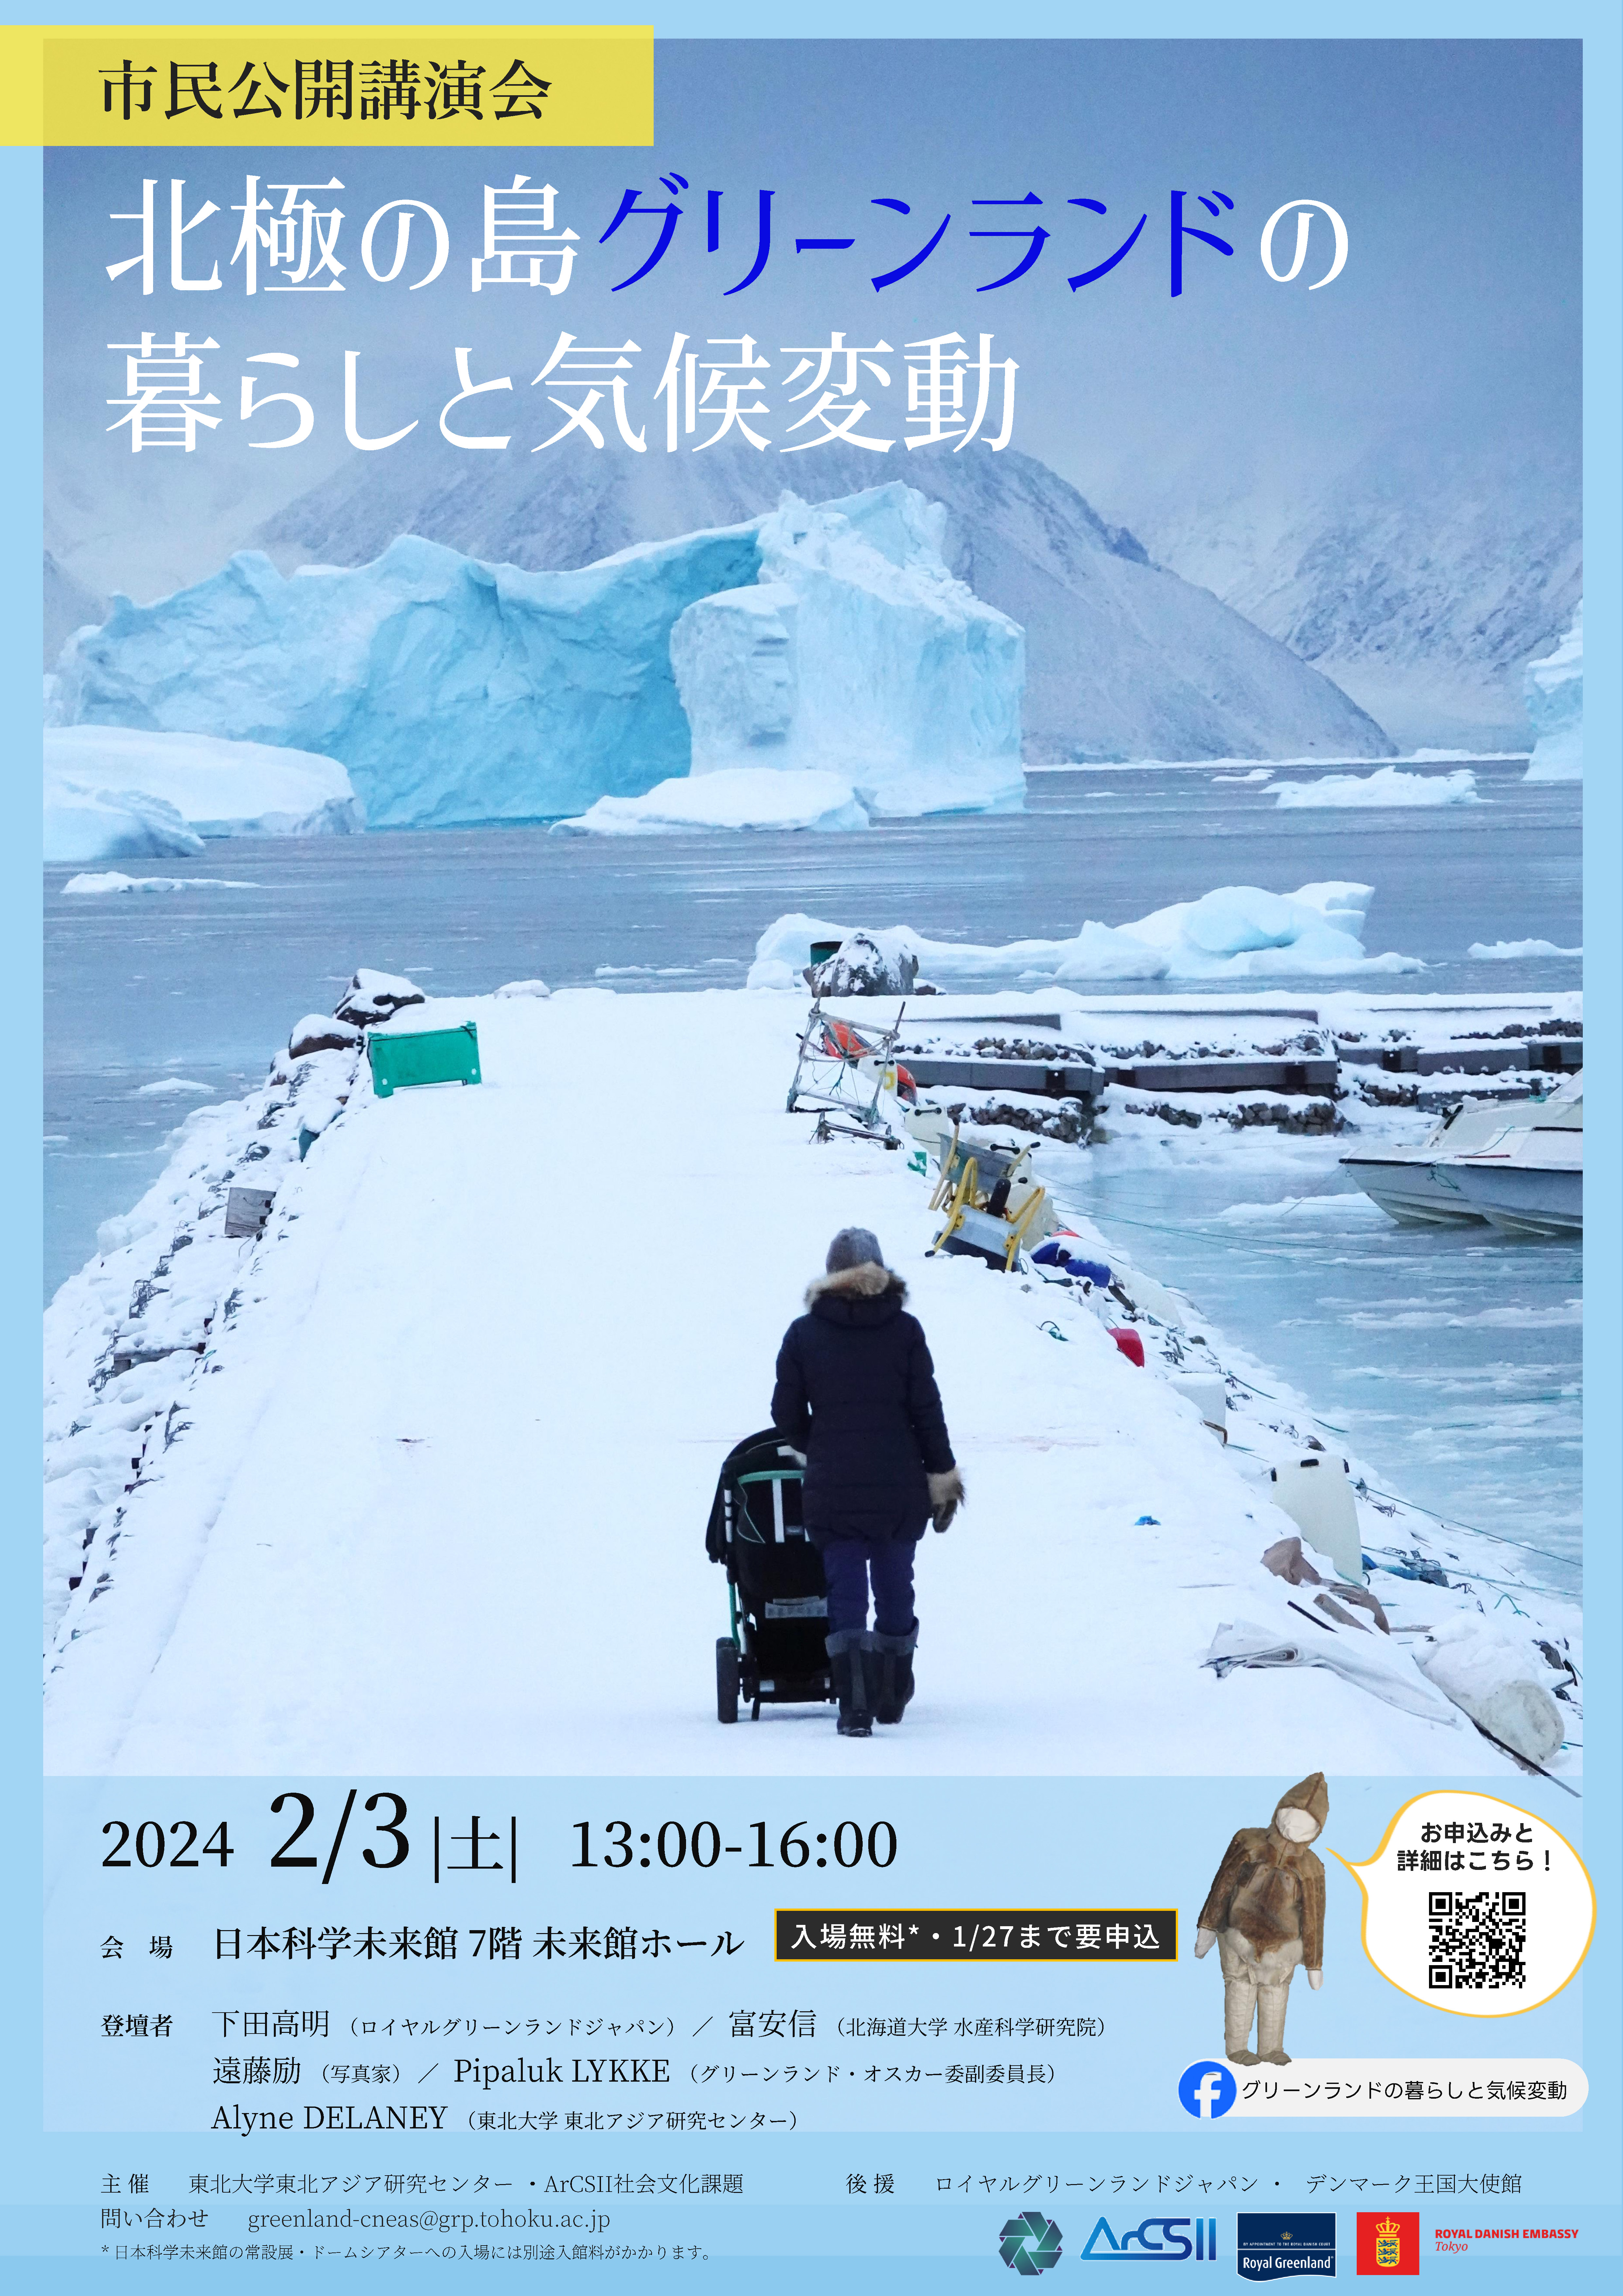 市民公開講演会「北極の島グリーンランドの暮らしと気候変動」